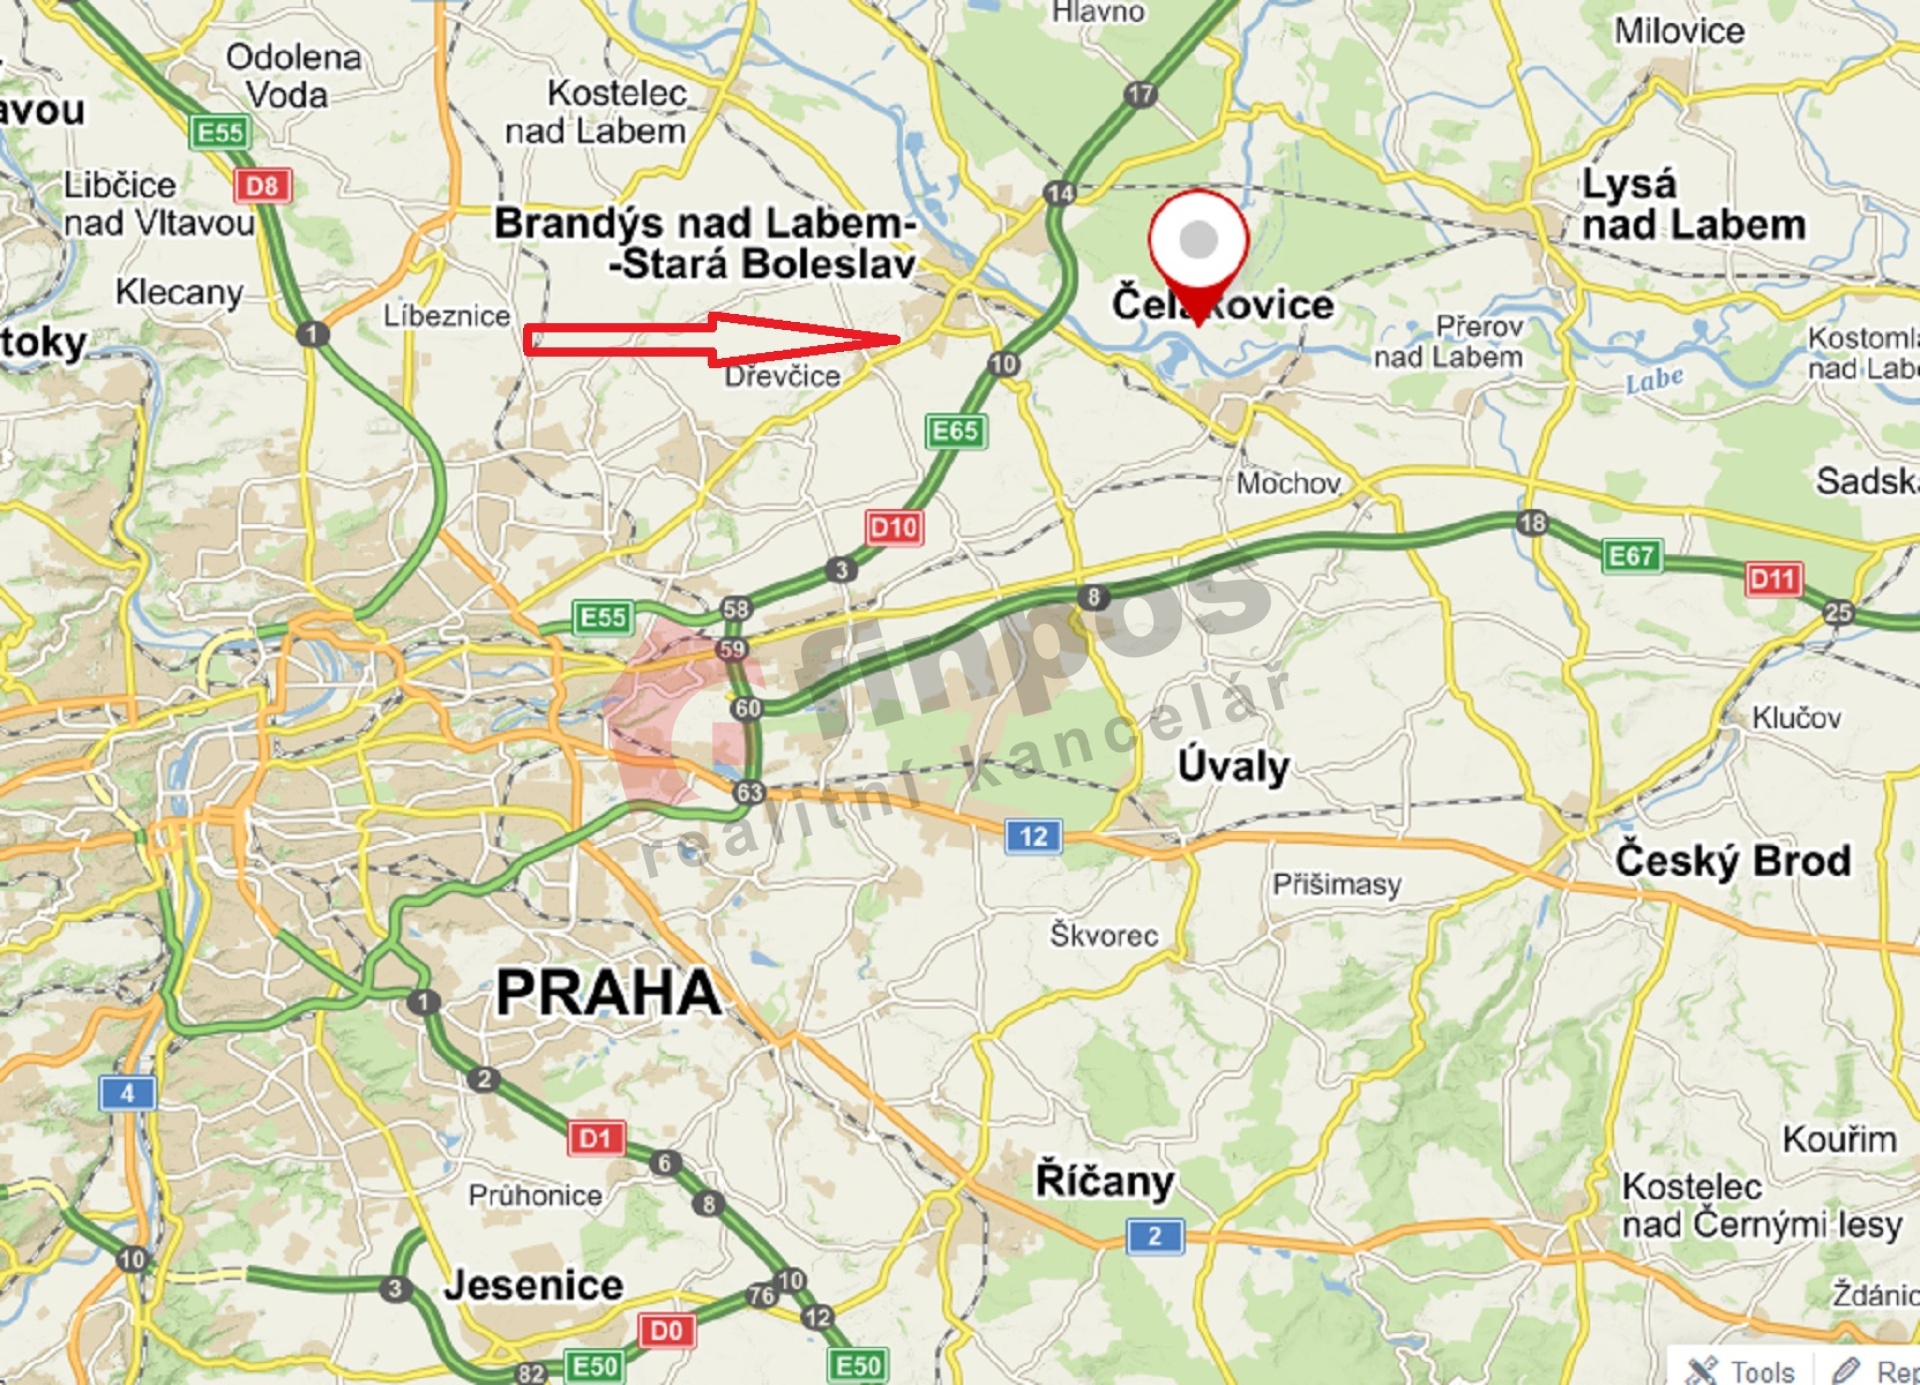 Stavební pozemek  992 m2 v obci Káraný u Brandýsa nad Labem - zasíťovaný